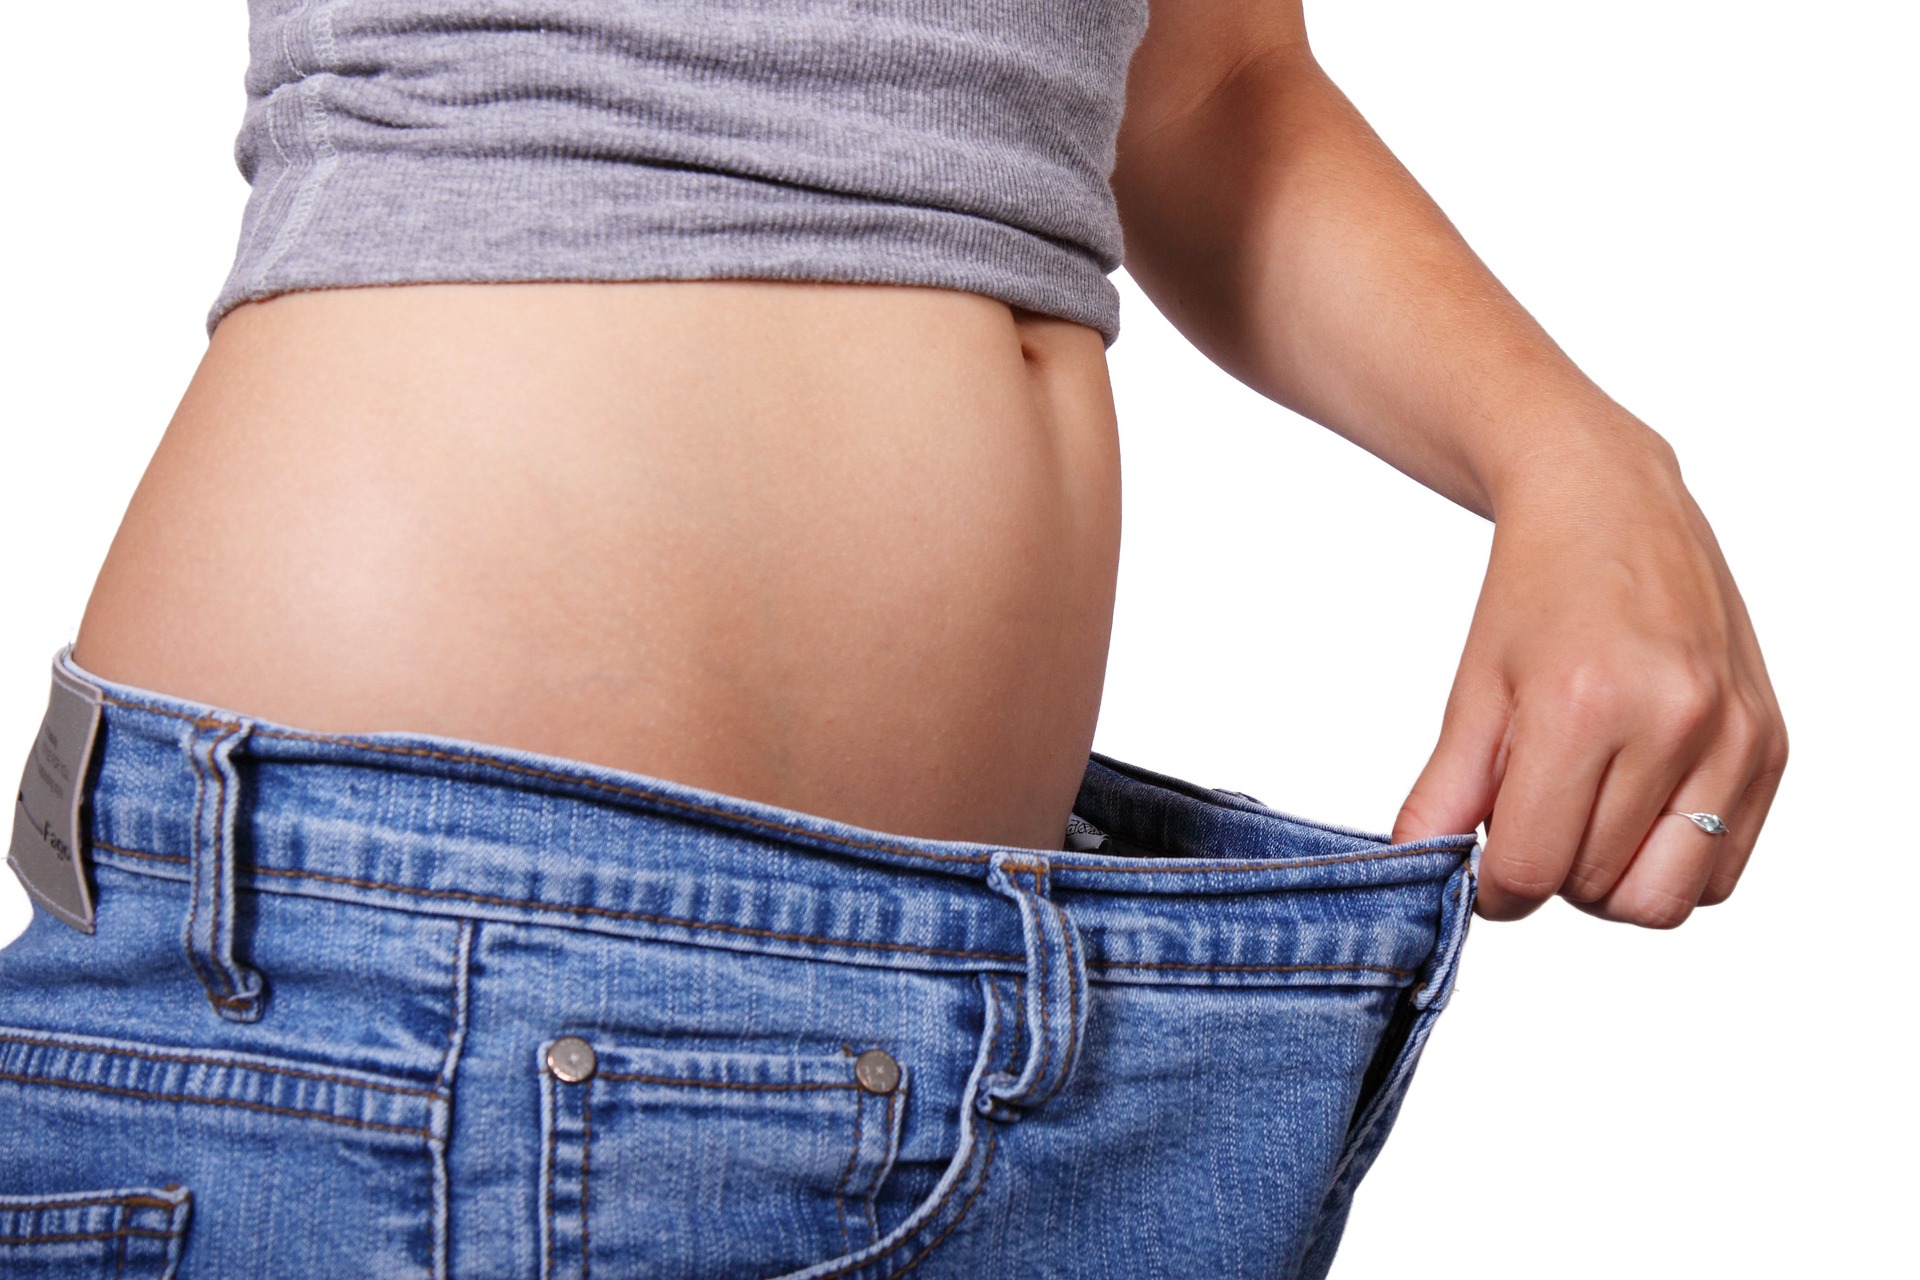 Dieta del rientro: consigli e rimedi per perdere peso naturalmente